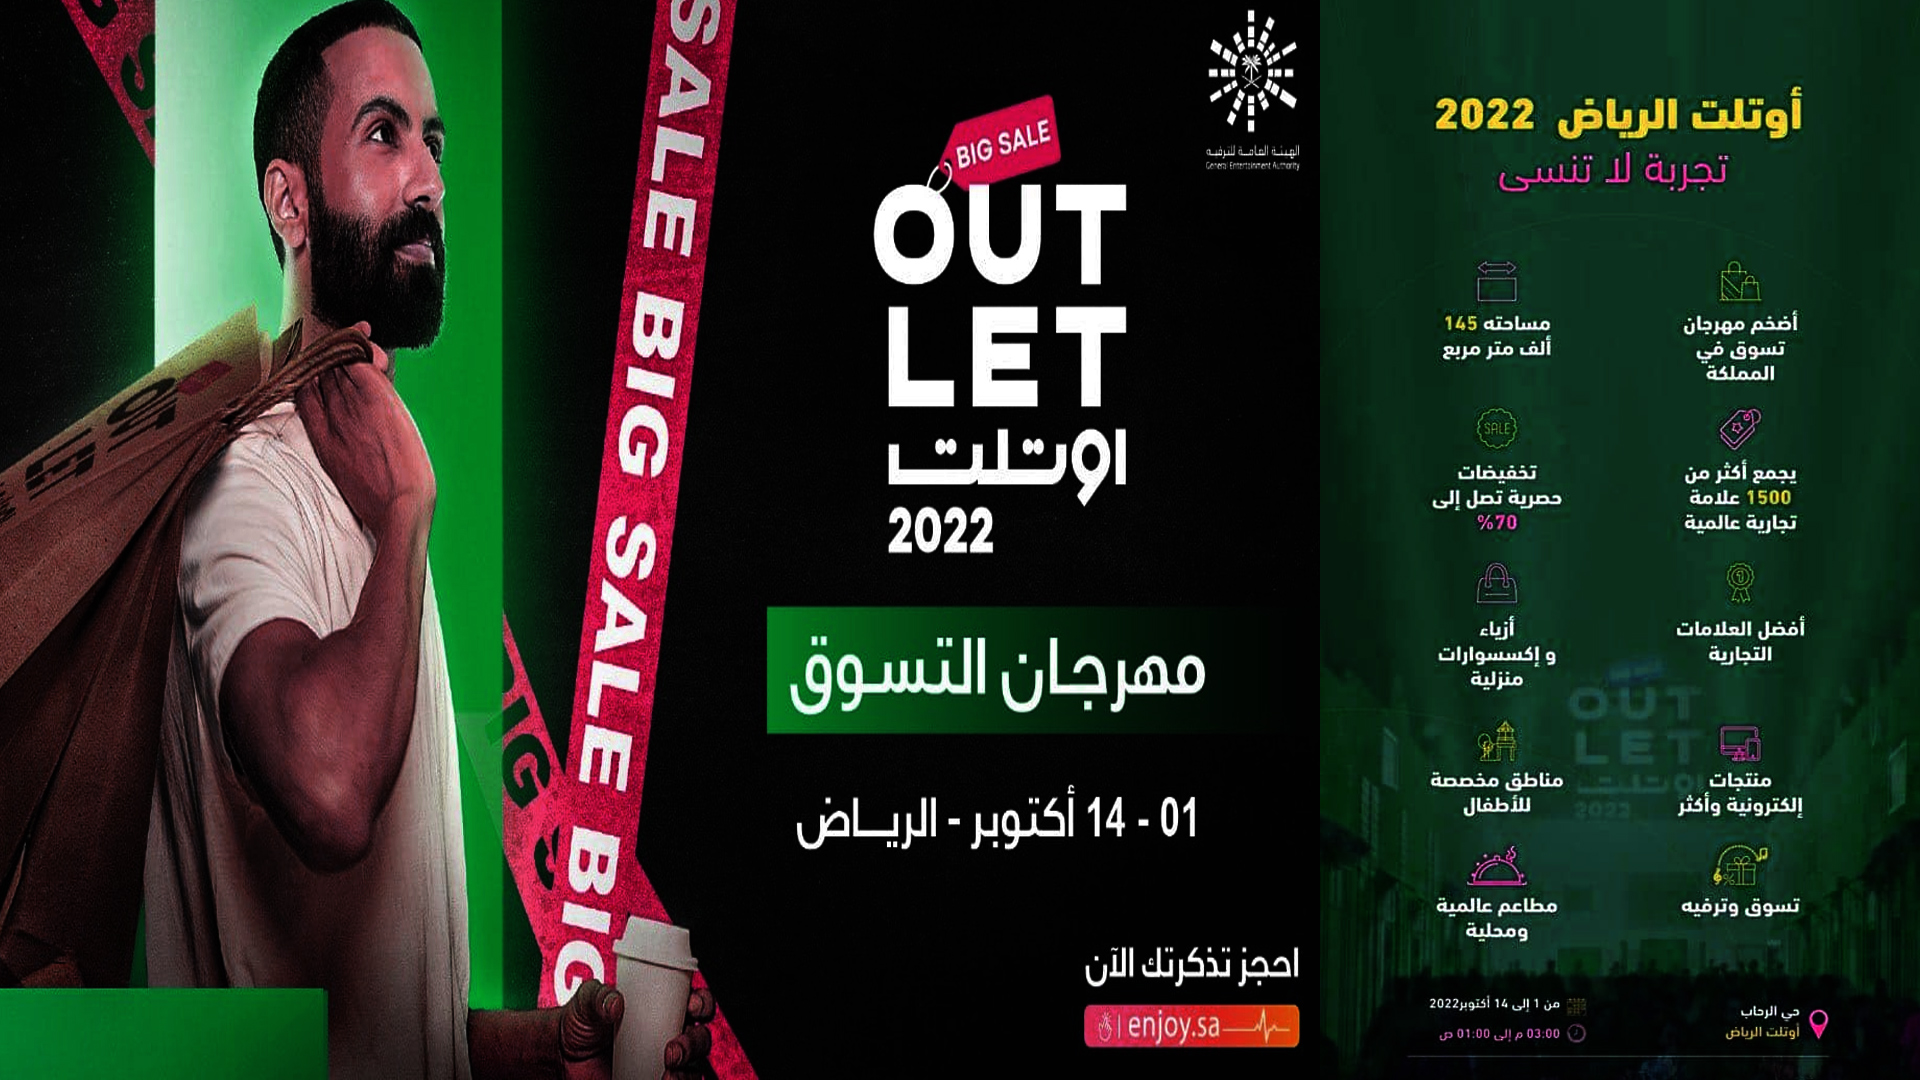 الفرصة الأخيرة outlet طريقة حجز تذكرة نهائية من أوت أوتلت الرياض 2022 واستكمال مفاجئات المهرجان